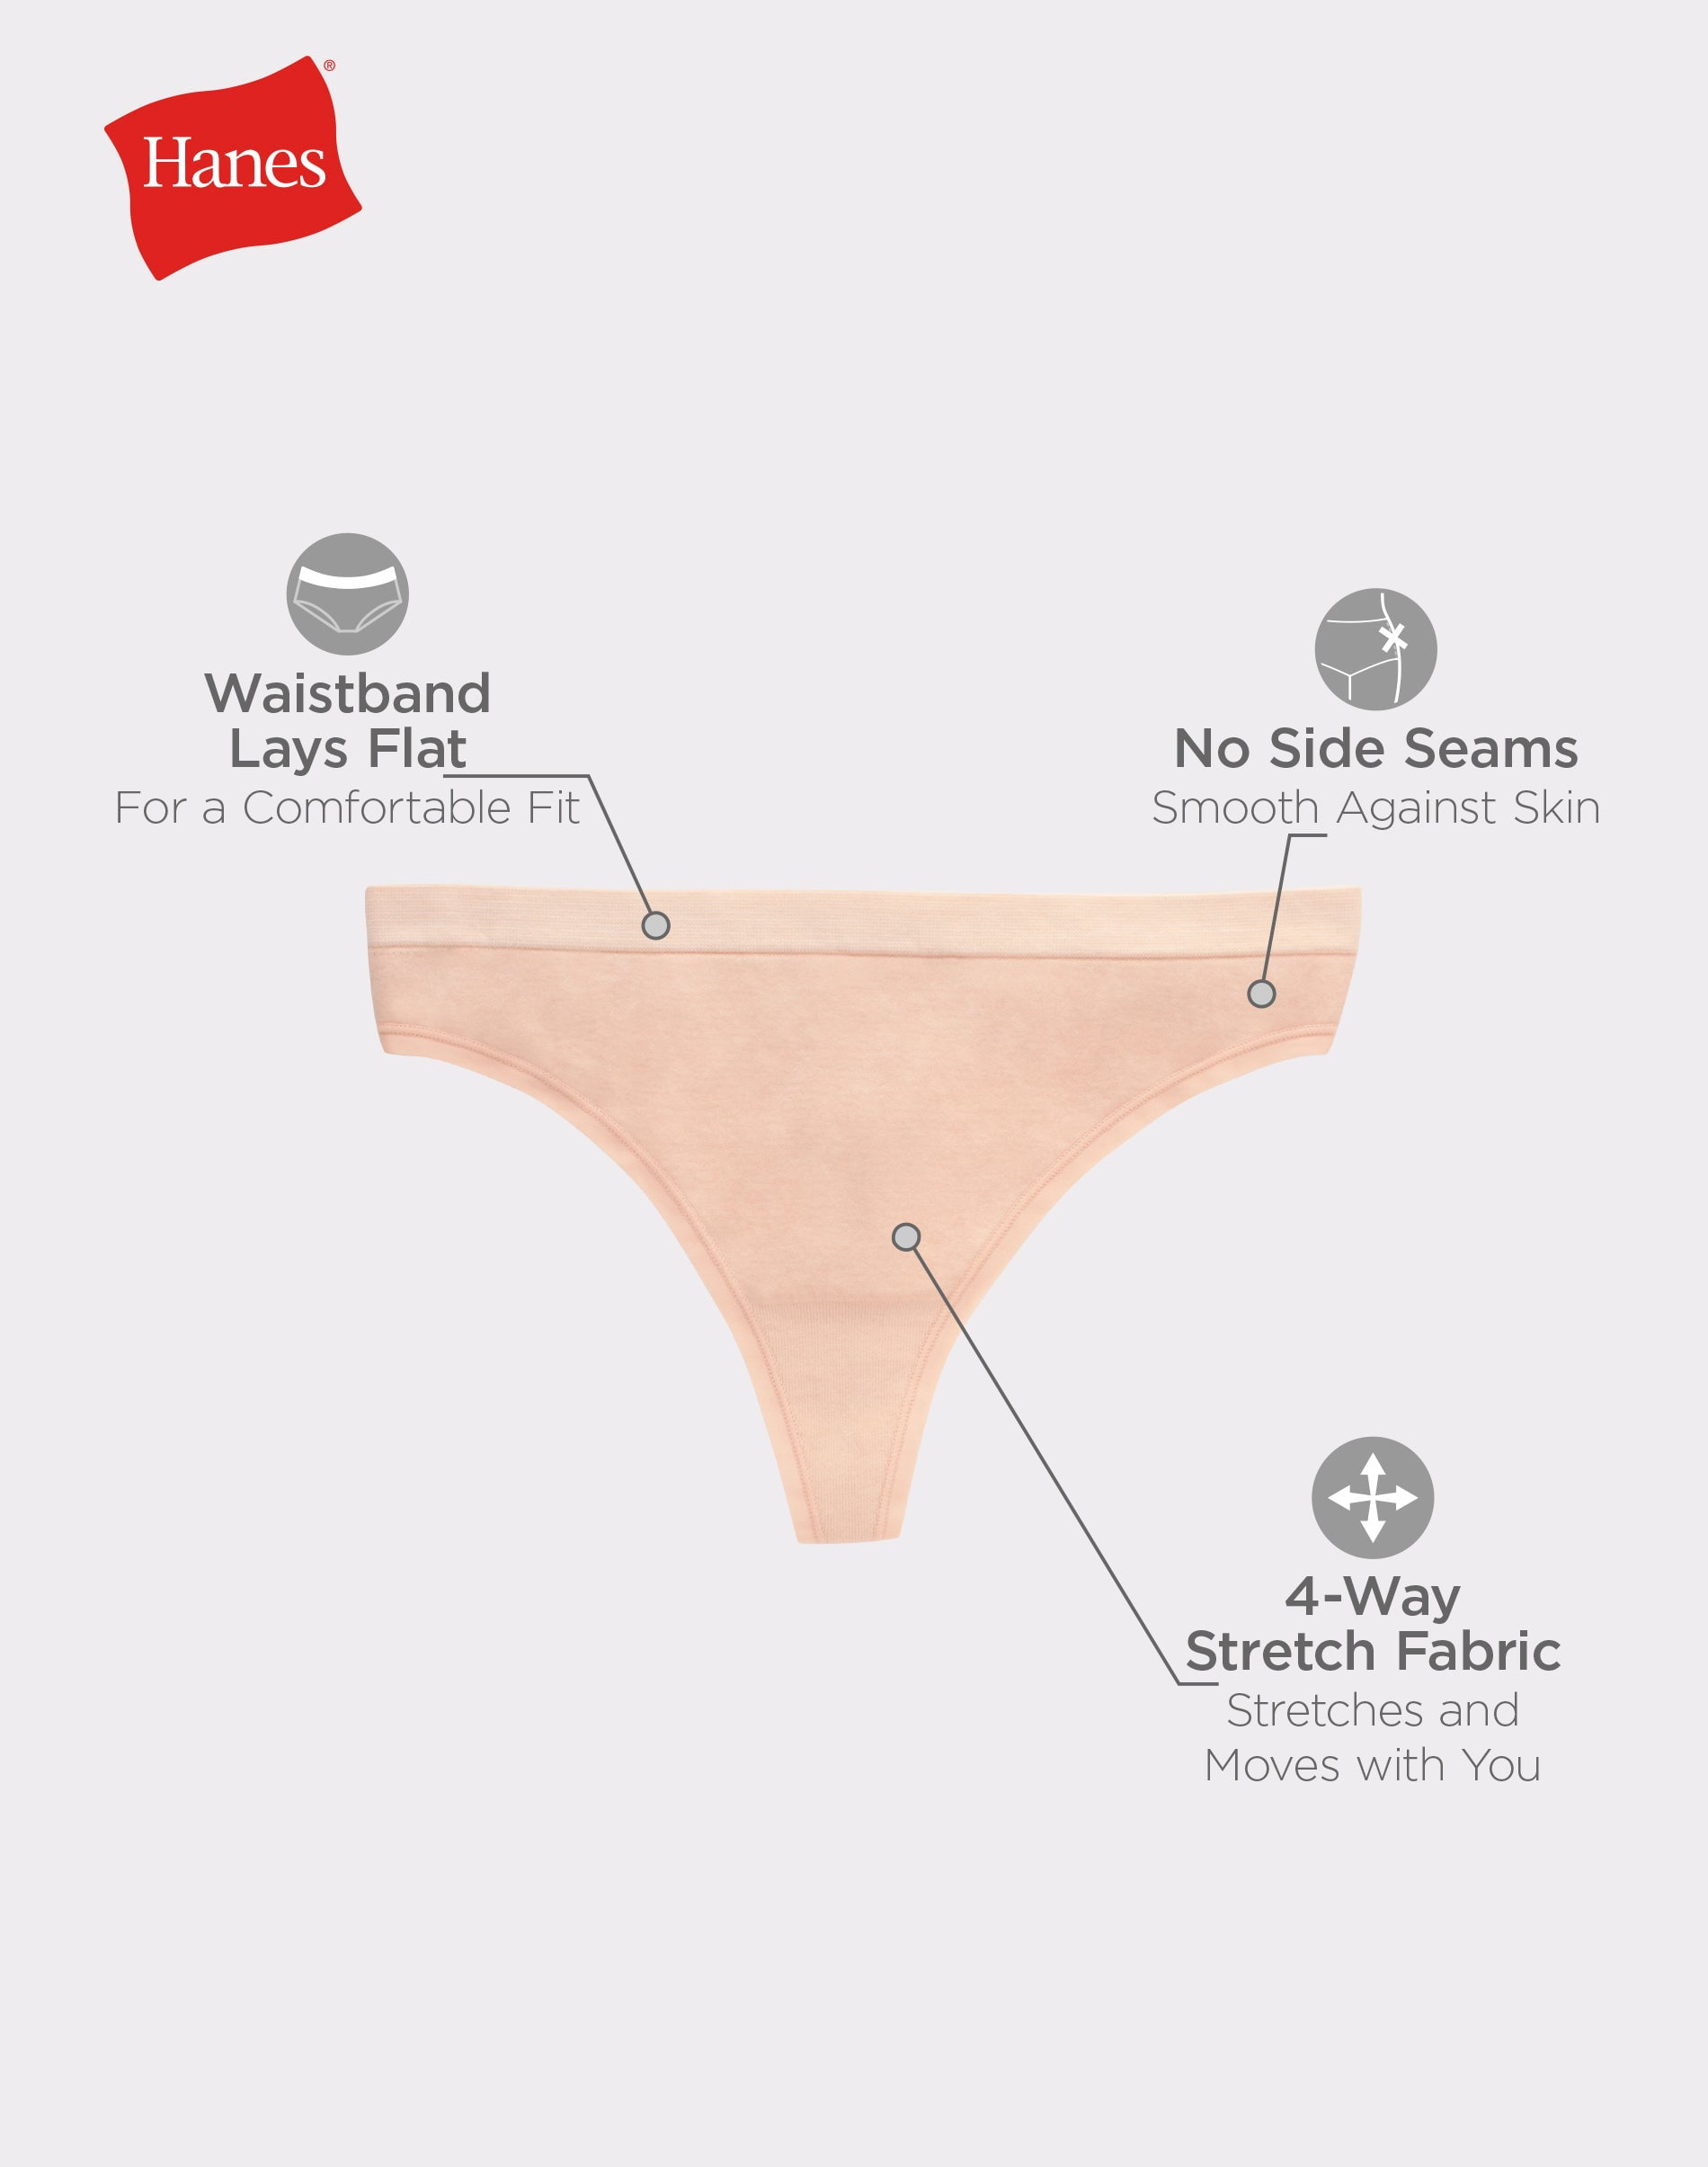 Buy ANESHA Women's Comfort Flex Fit Microfiber Panties, Moisture